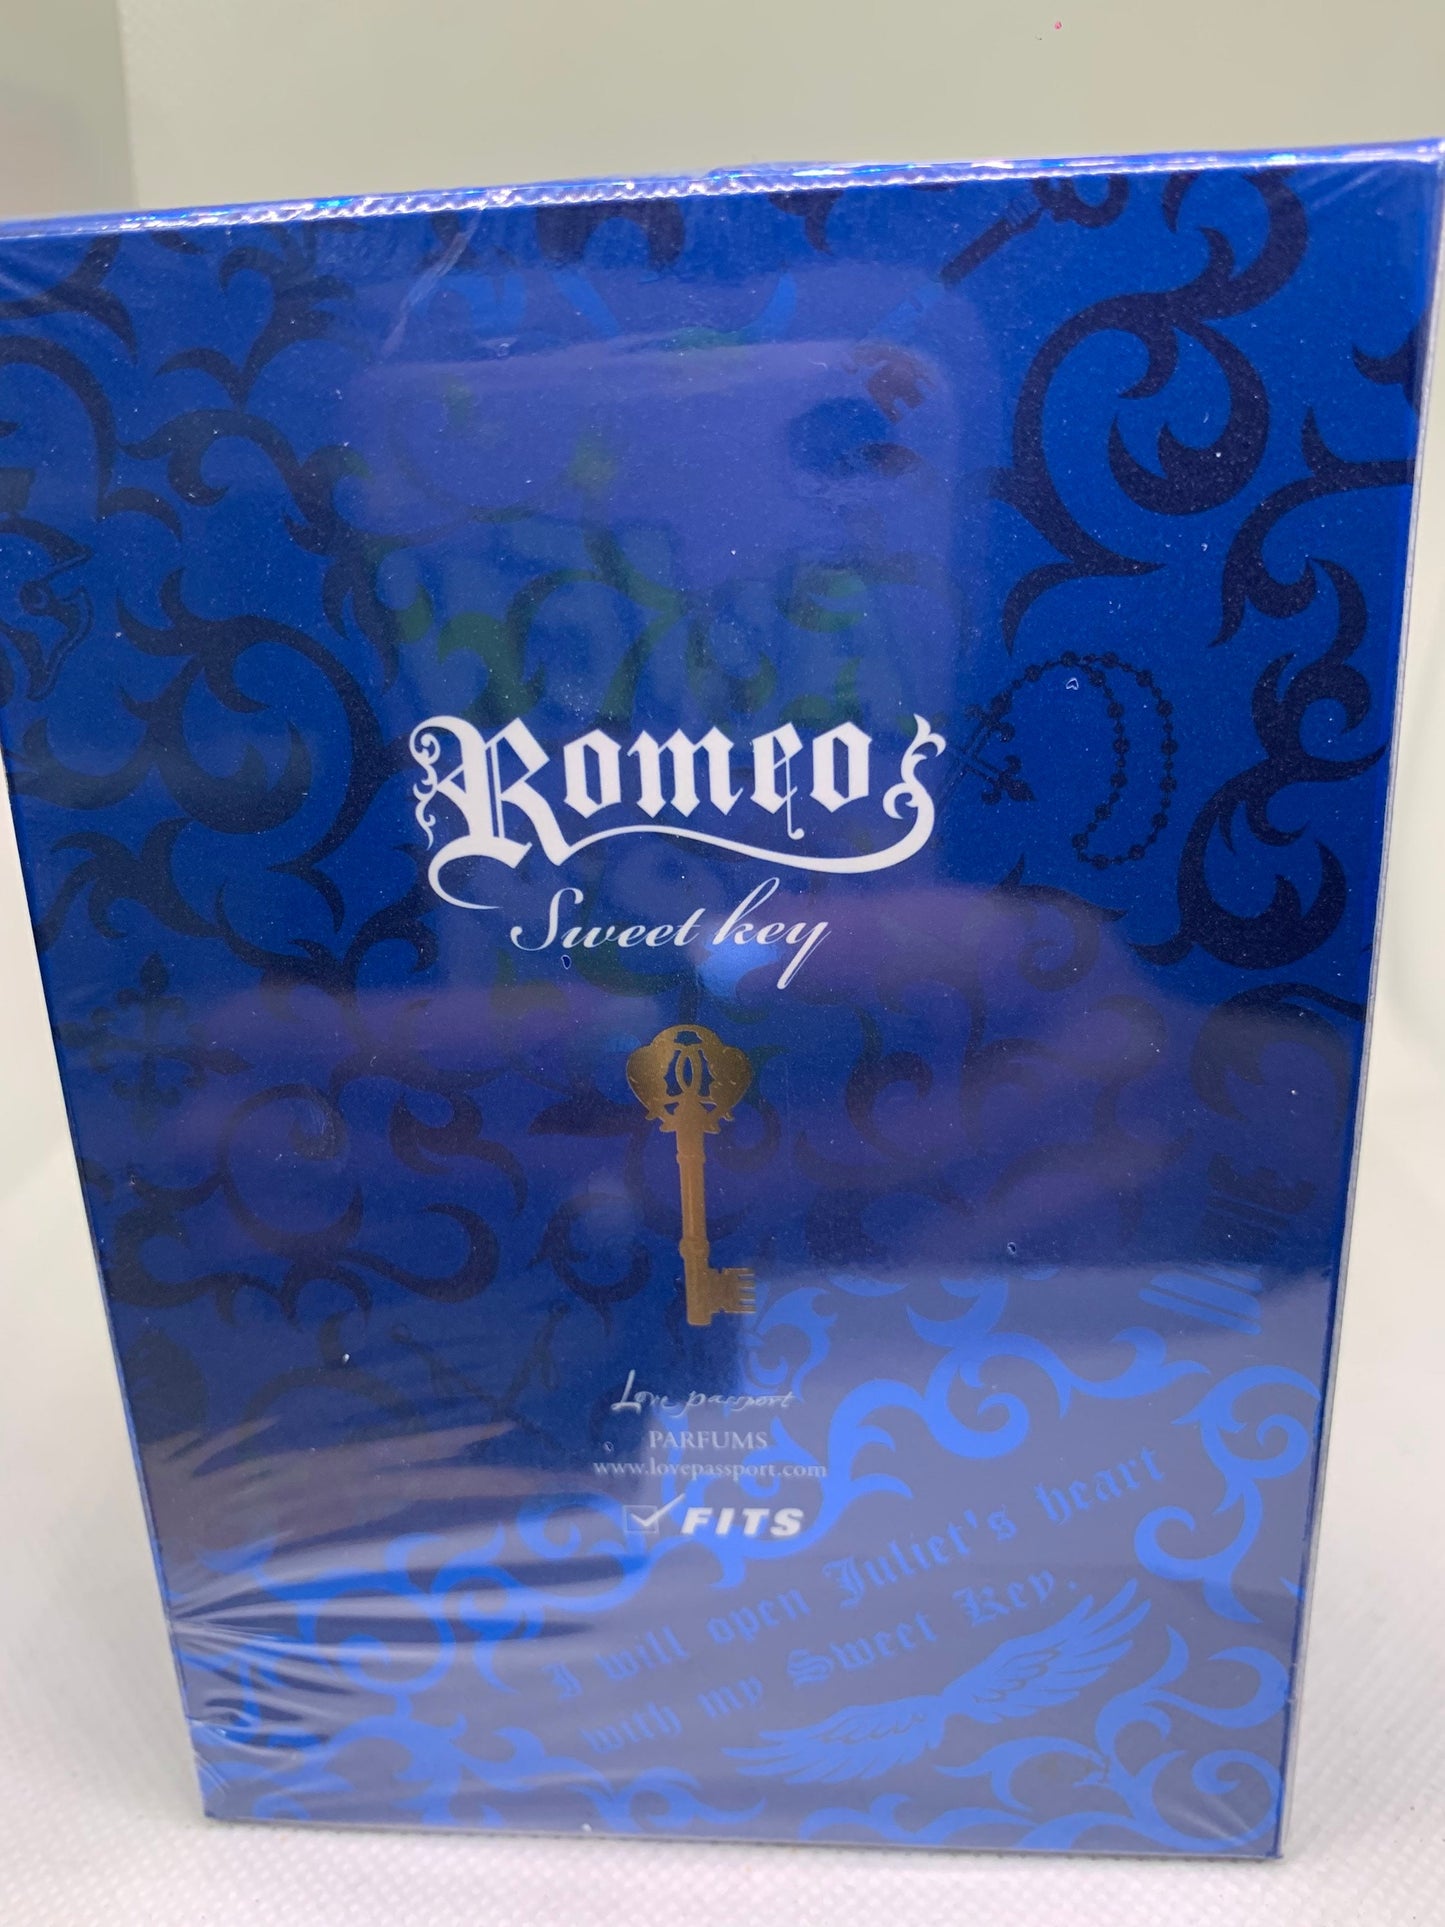 Romeo Lored Sweet Key Eau De Parfum 50ml 1.7Fl oz 80Vol (16 May 2022)